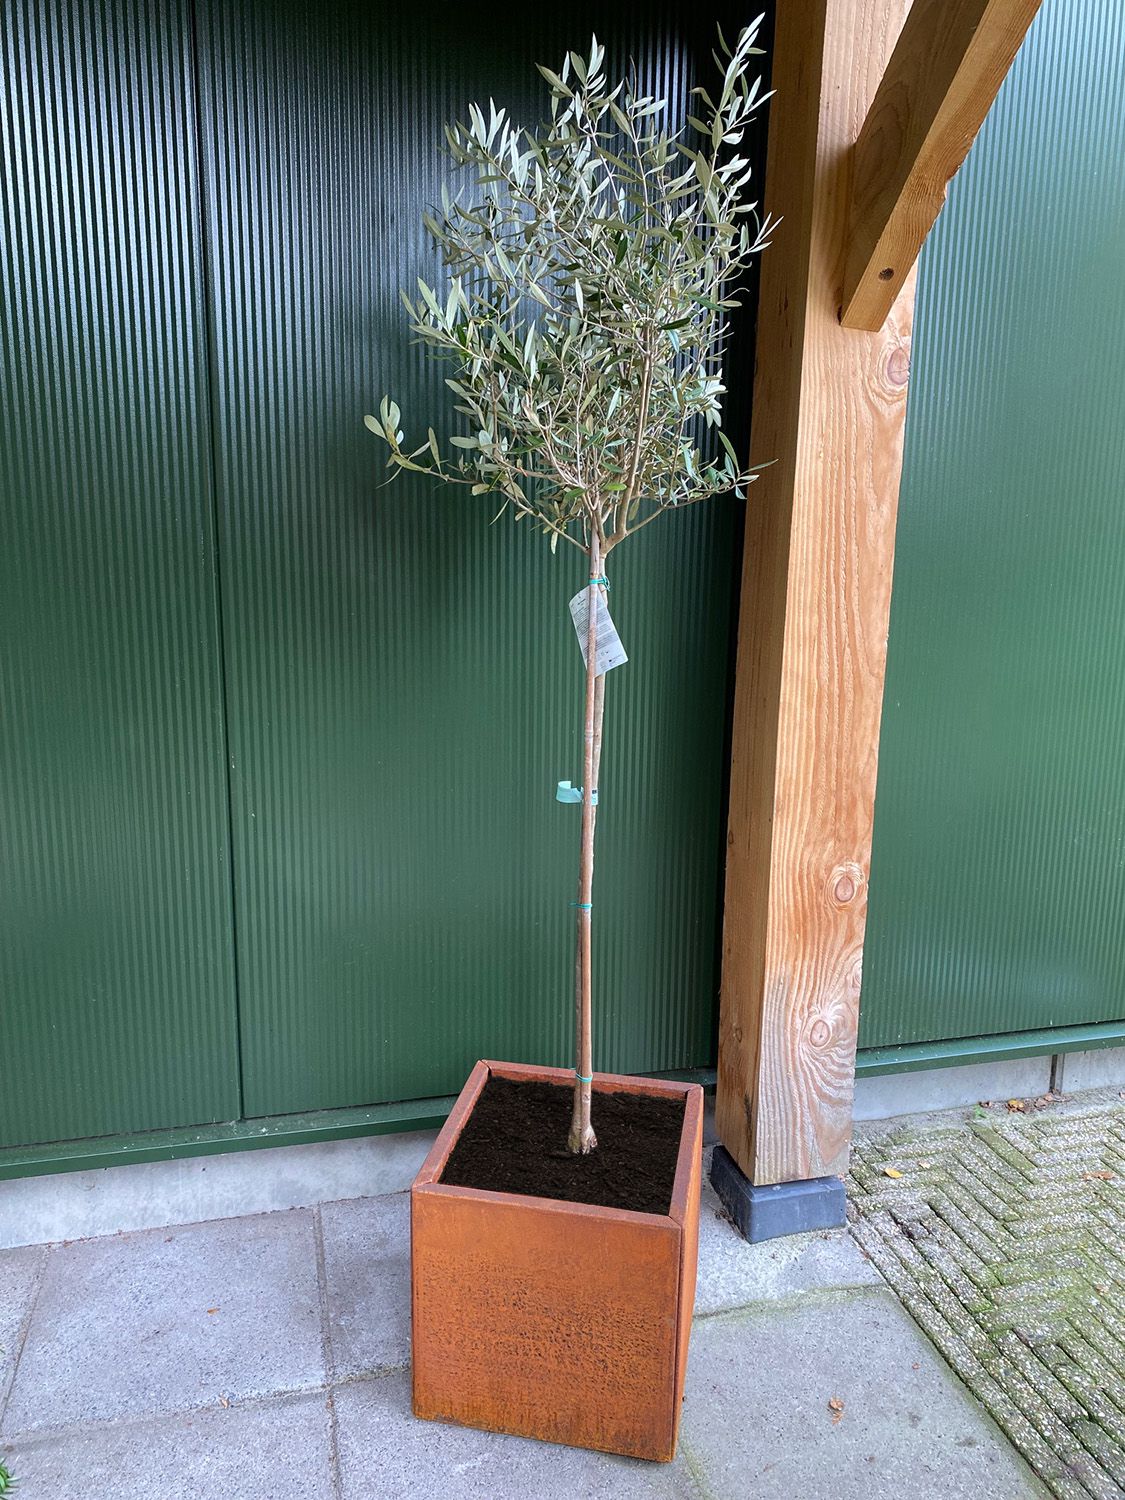 Plantenbak Kubus Cortenstaal met olijfboom